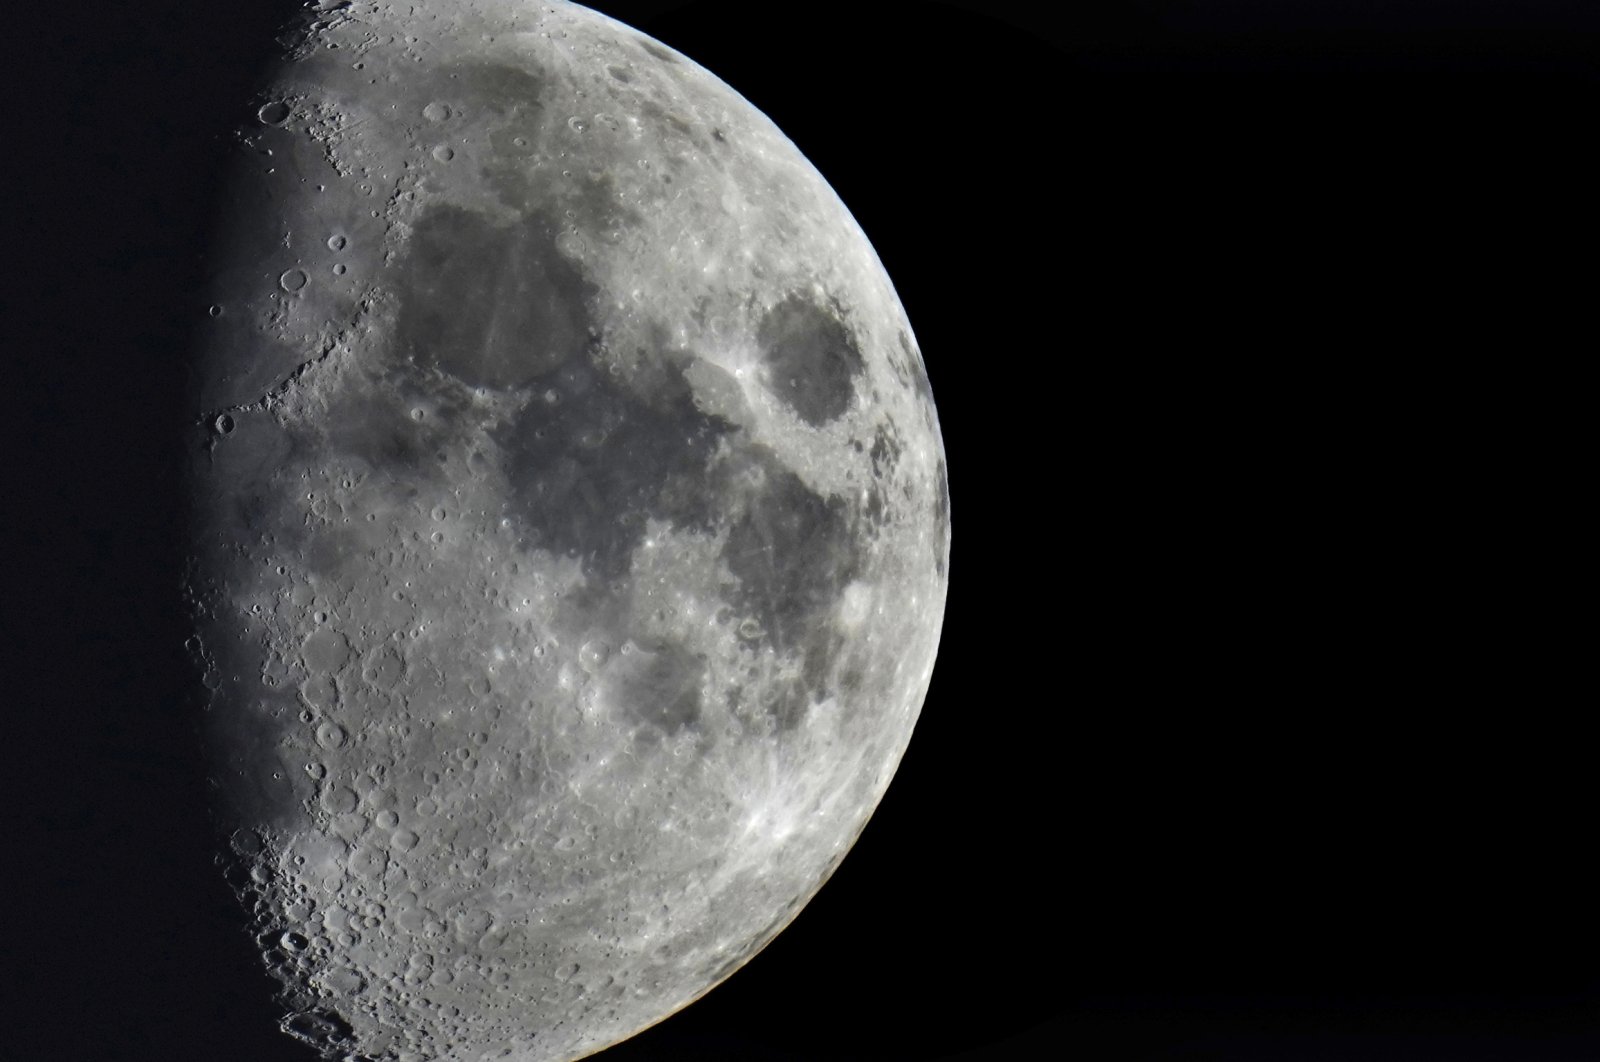 Roket tua seberat hampir 4 ton menabrak bulan, para astronom menghitung